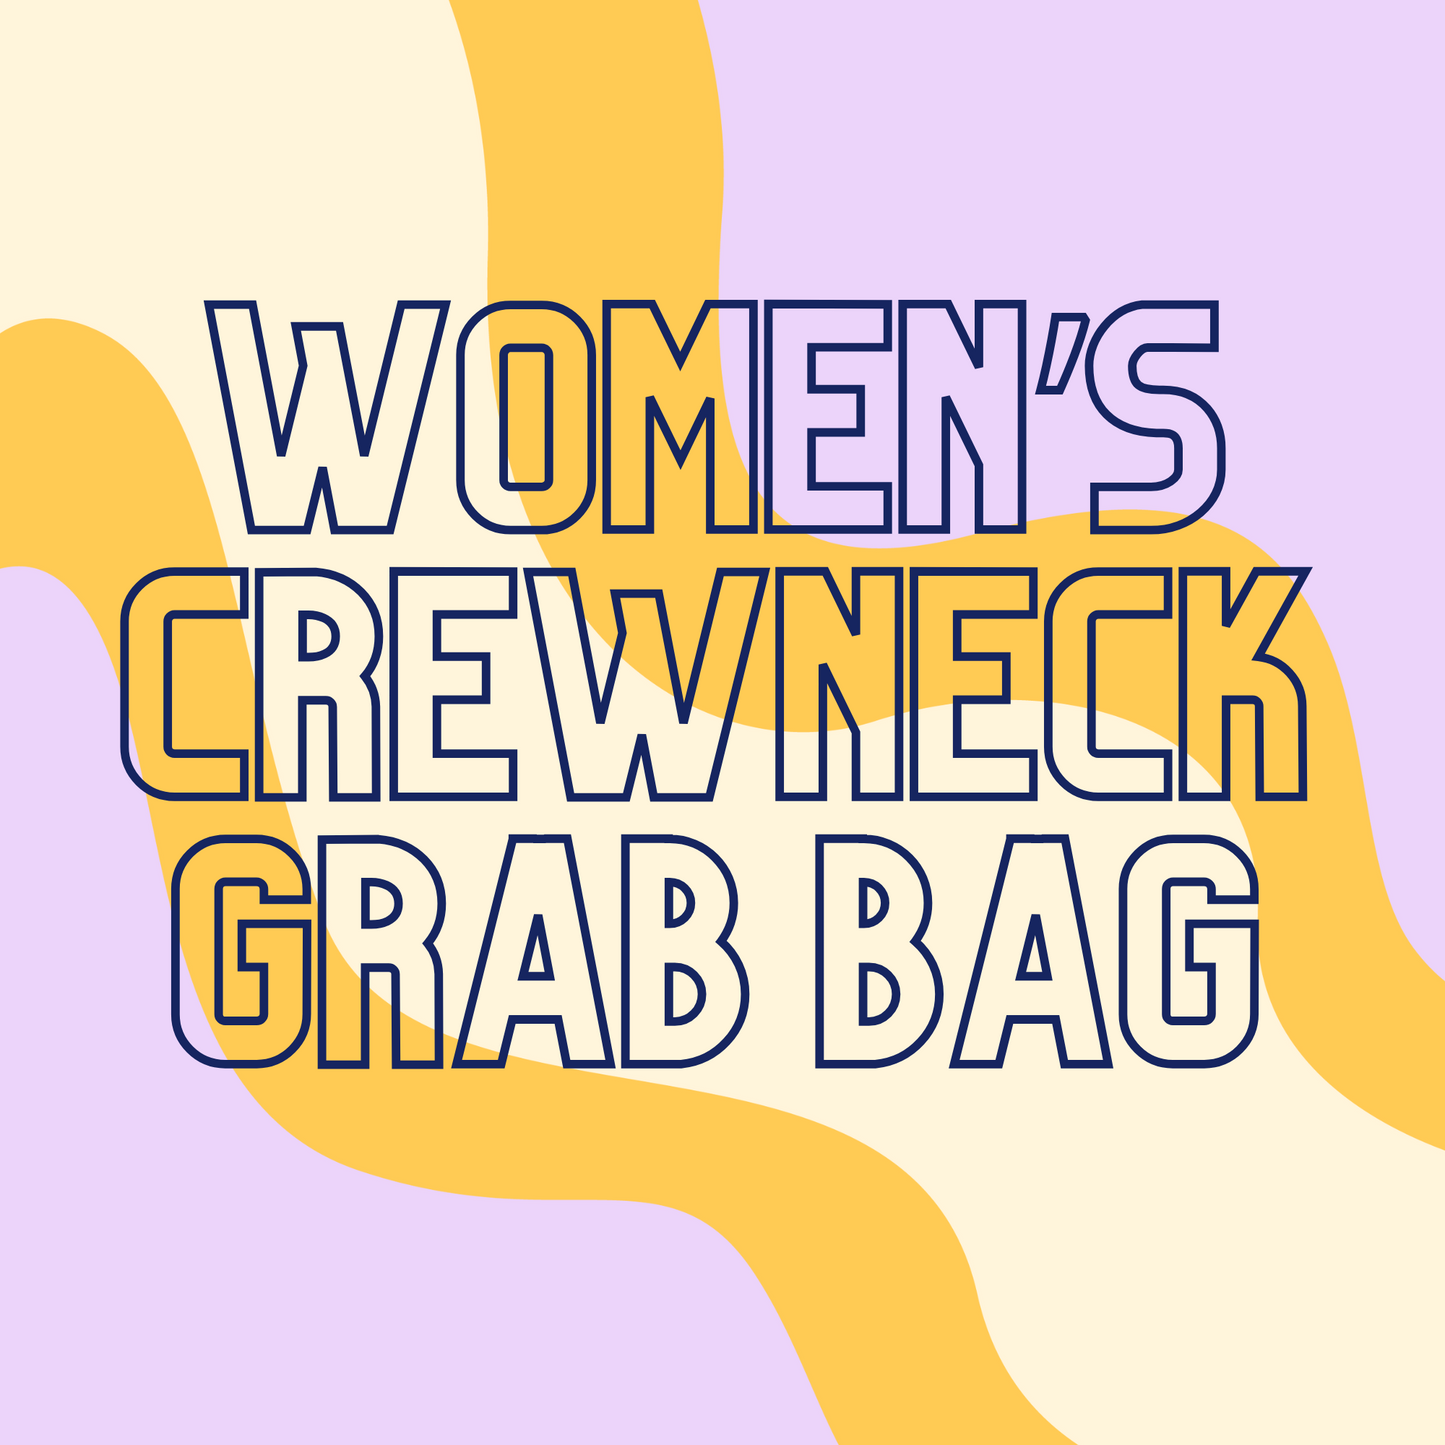 Grab Bag | Women's